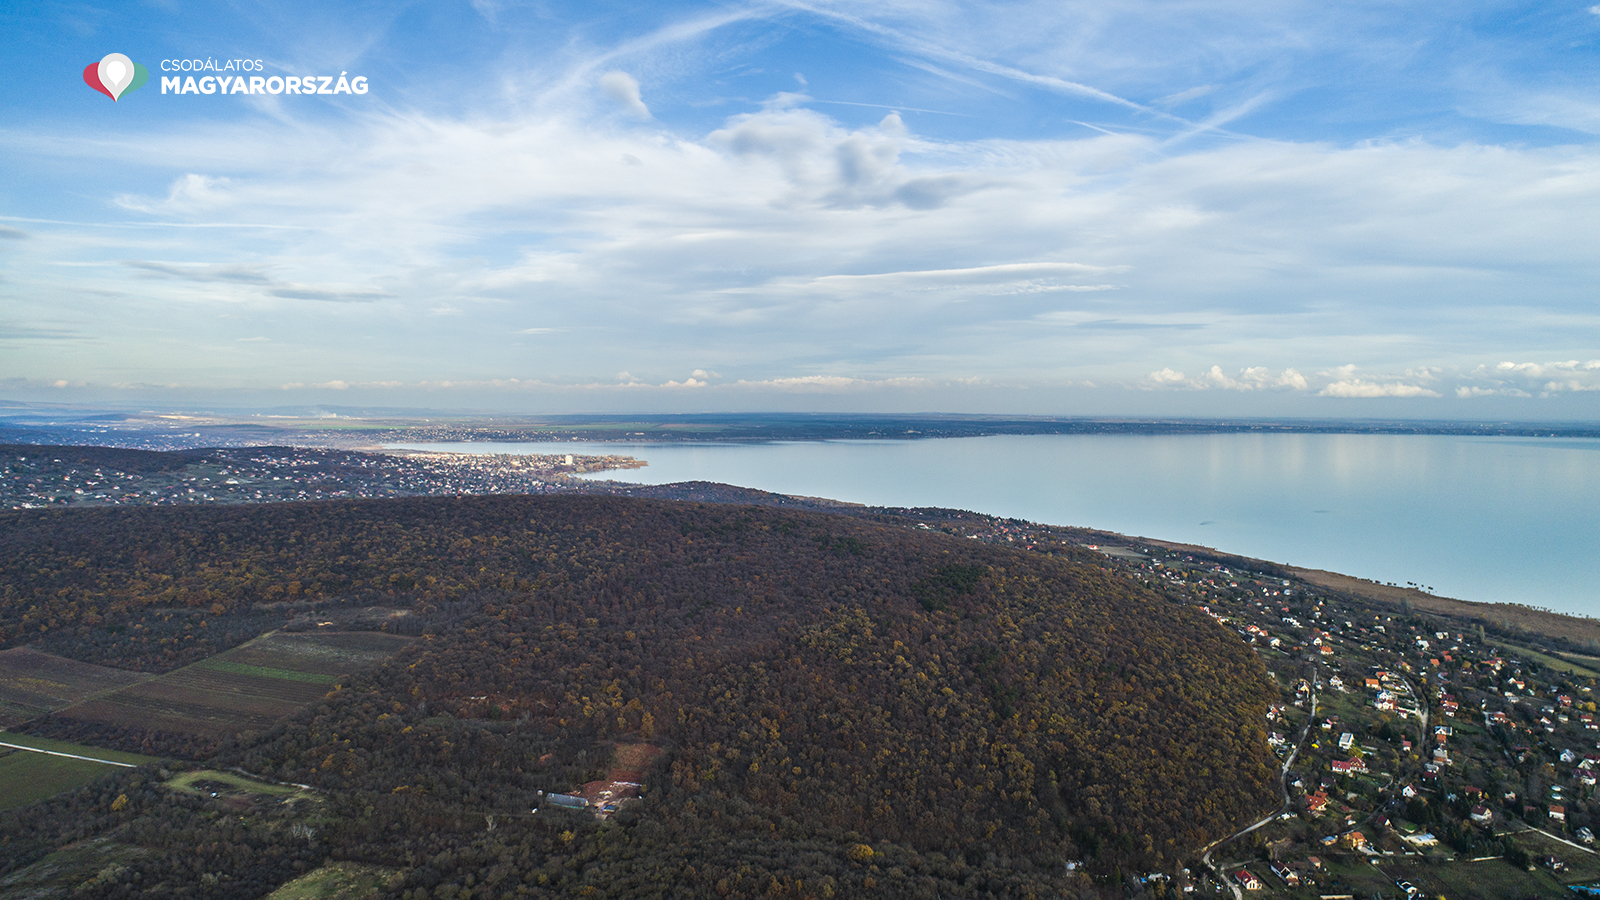 Der Aussichtsturm Somlyó bietet ein Herbstpanorama wie aus dem Bilderbuch